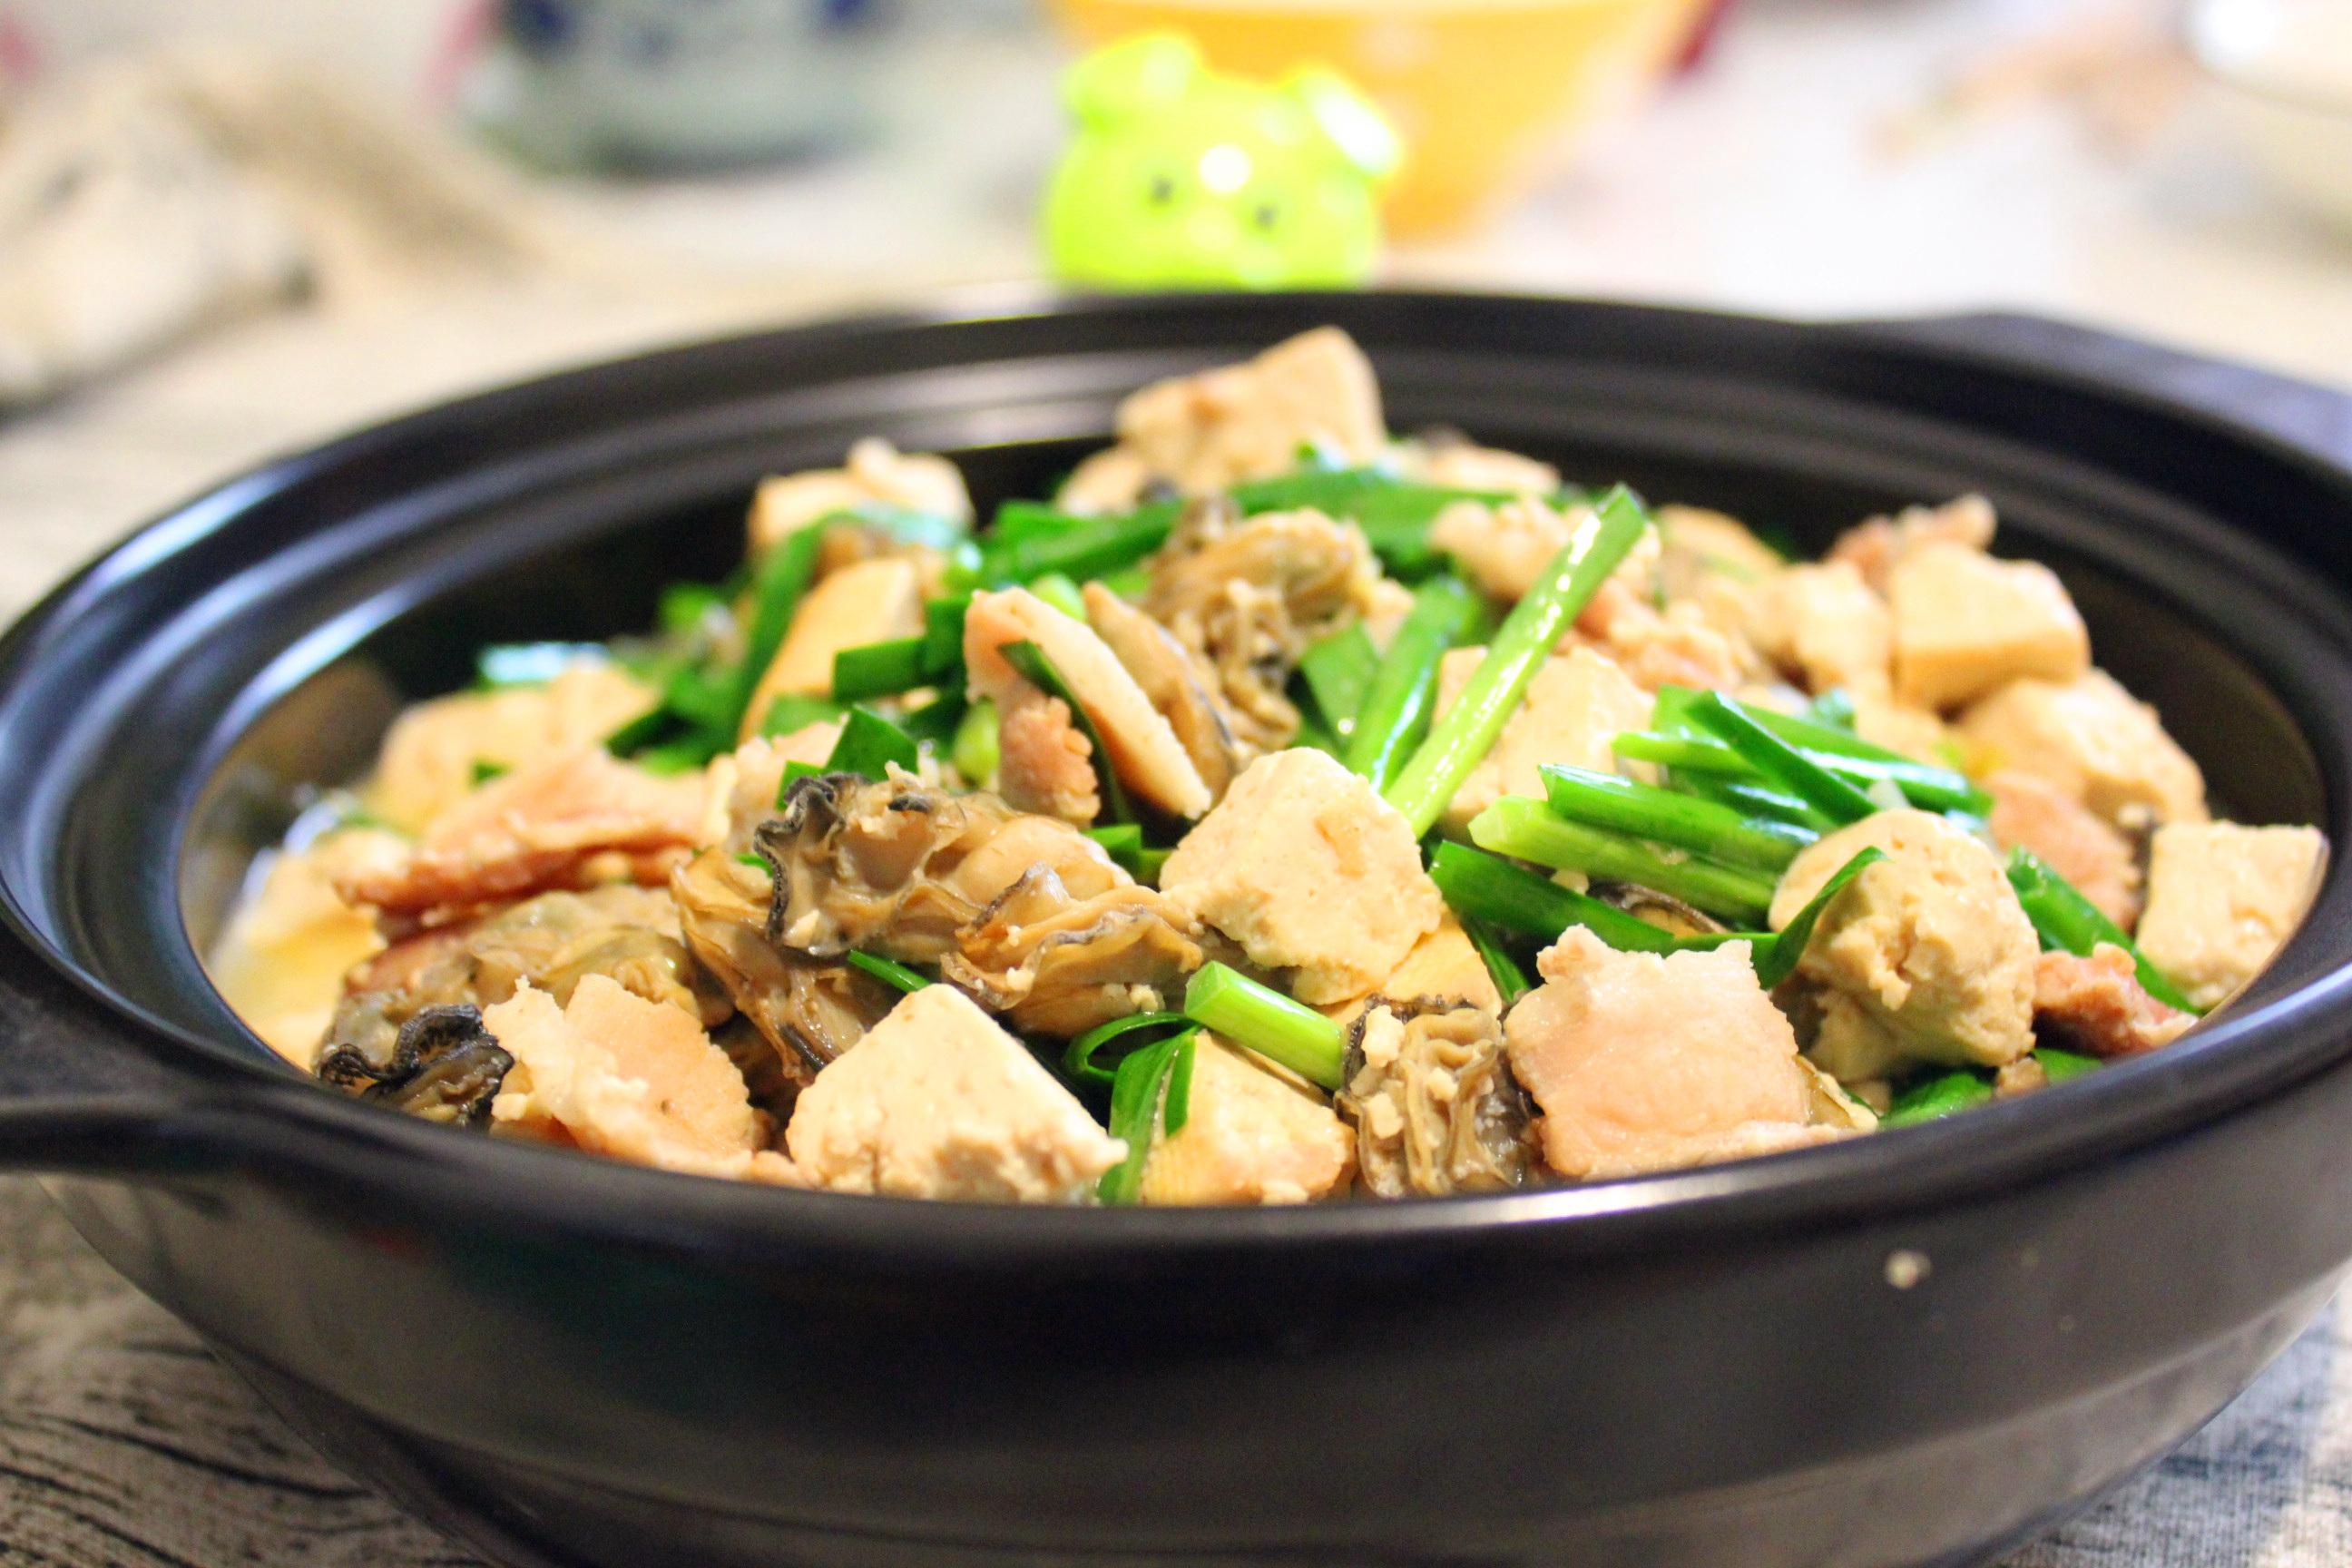 龙利鱼豆腐汤怎么做_龙利鱼豆腐汤的做法_豆果美食